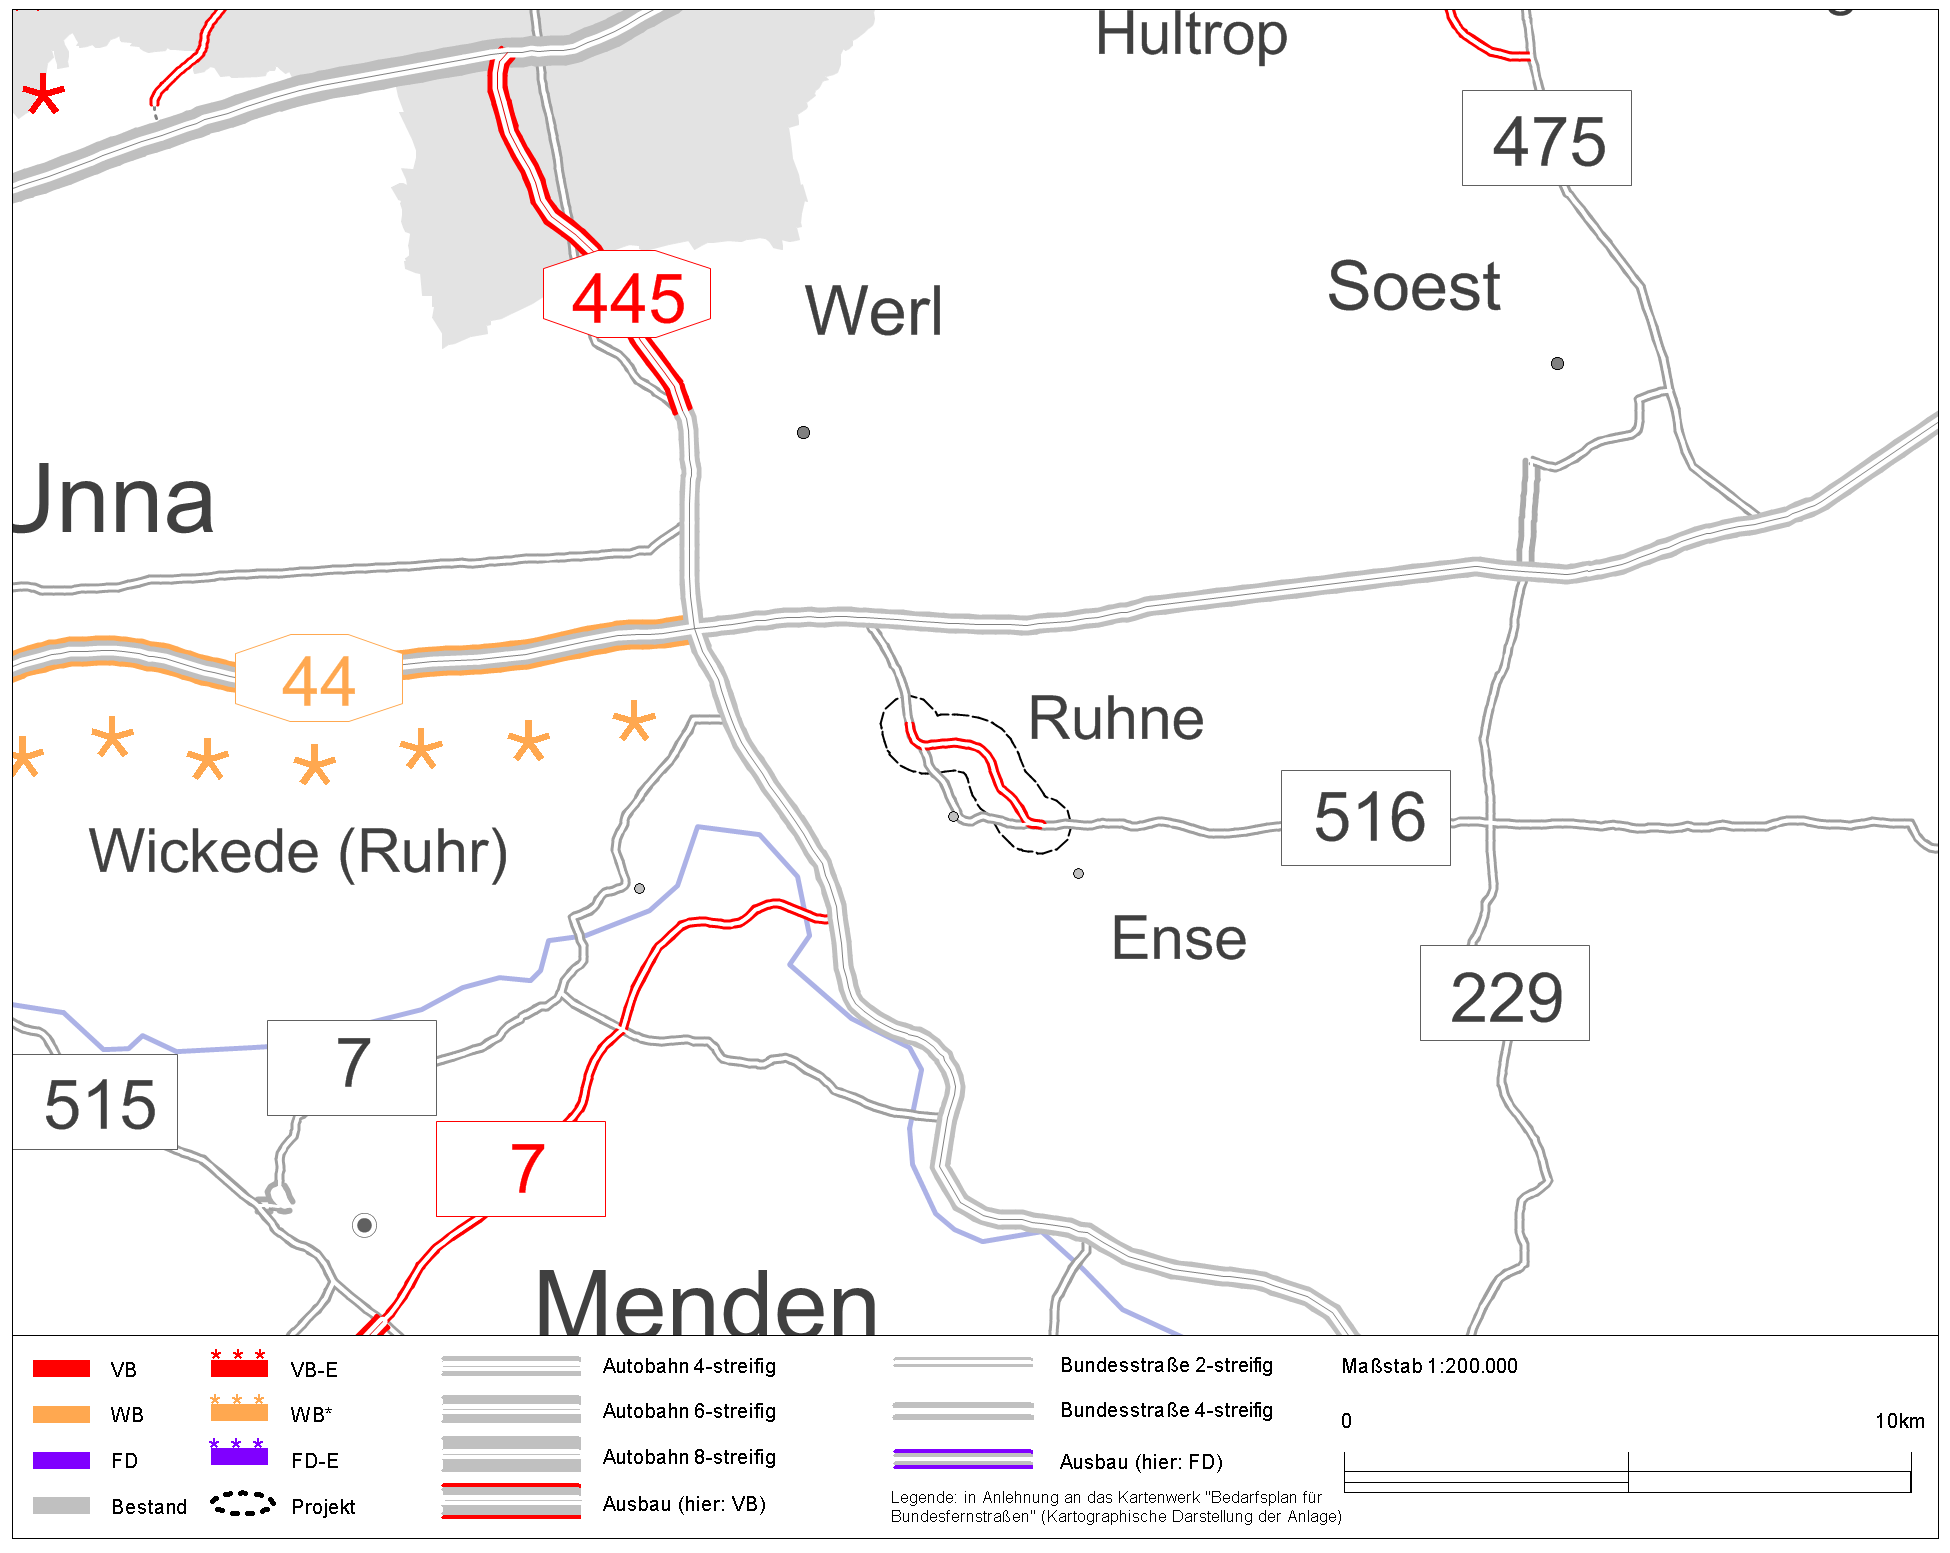 Kommunen - Herten - Bulle und Bär in Grün werben für Standort Ruhrgebiet  - Panorama - SZ.de